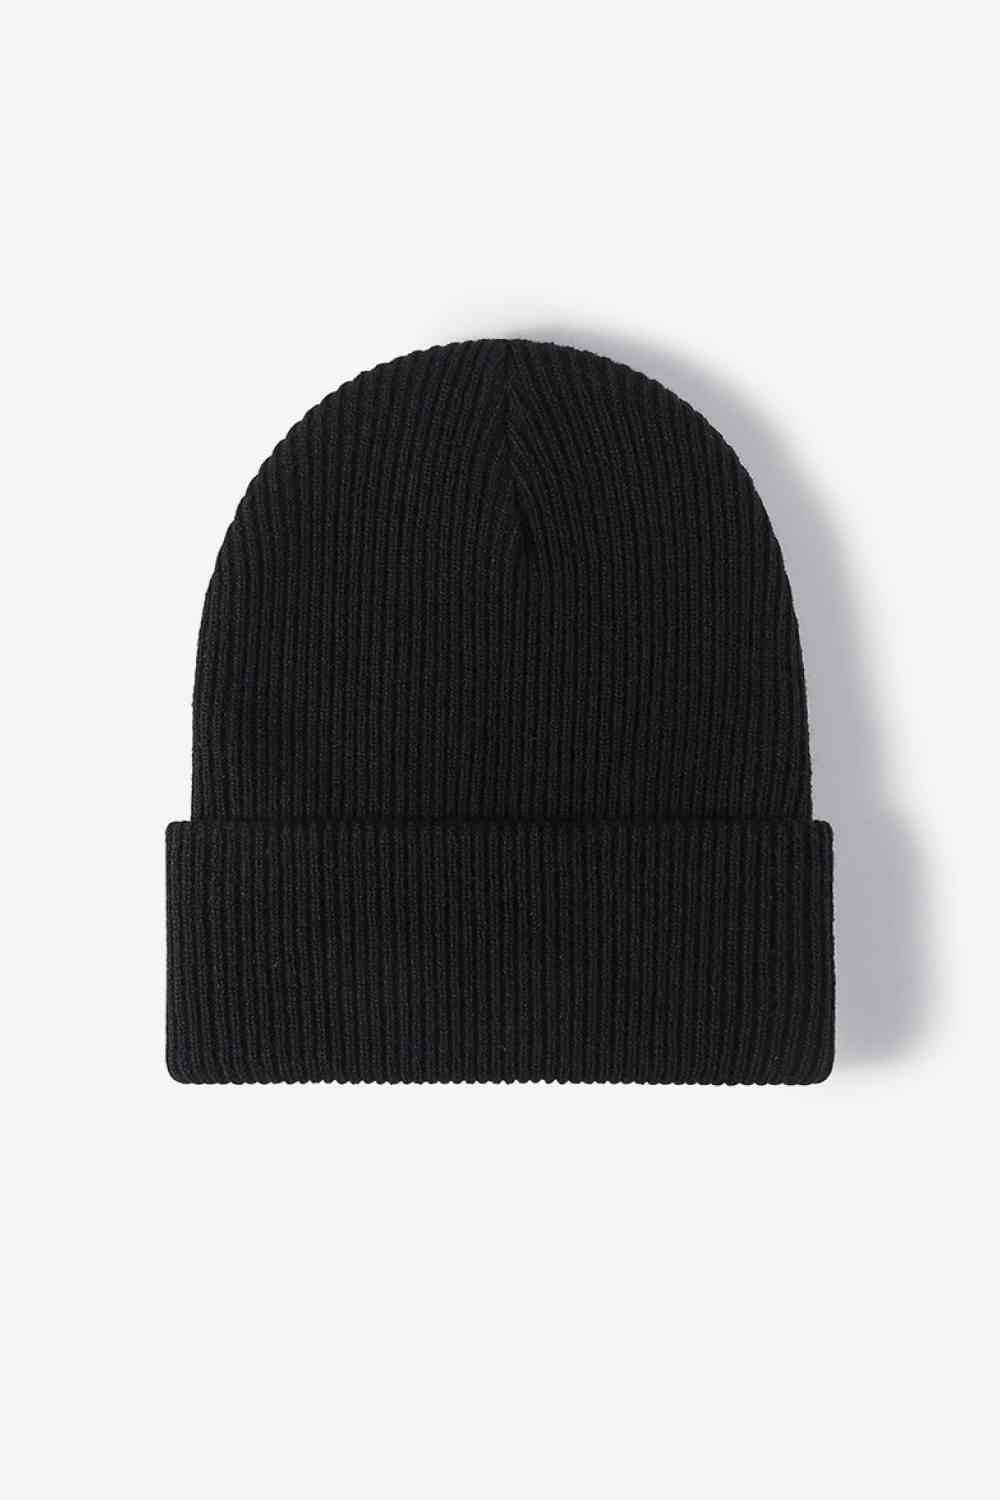 Warm Winter Knit Beanie Black One Size